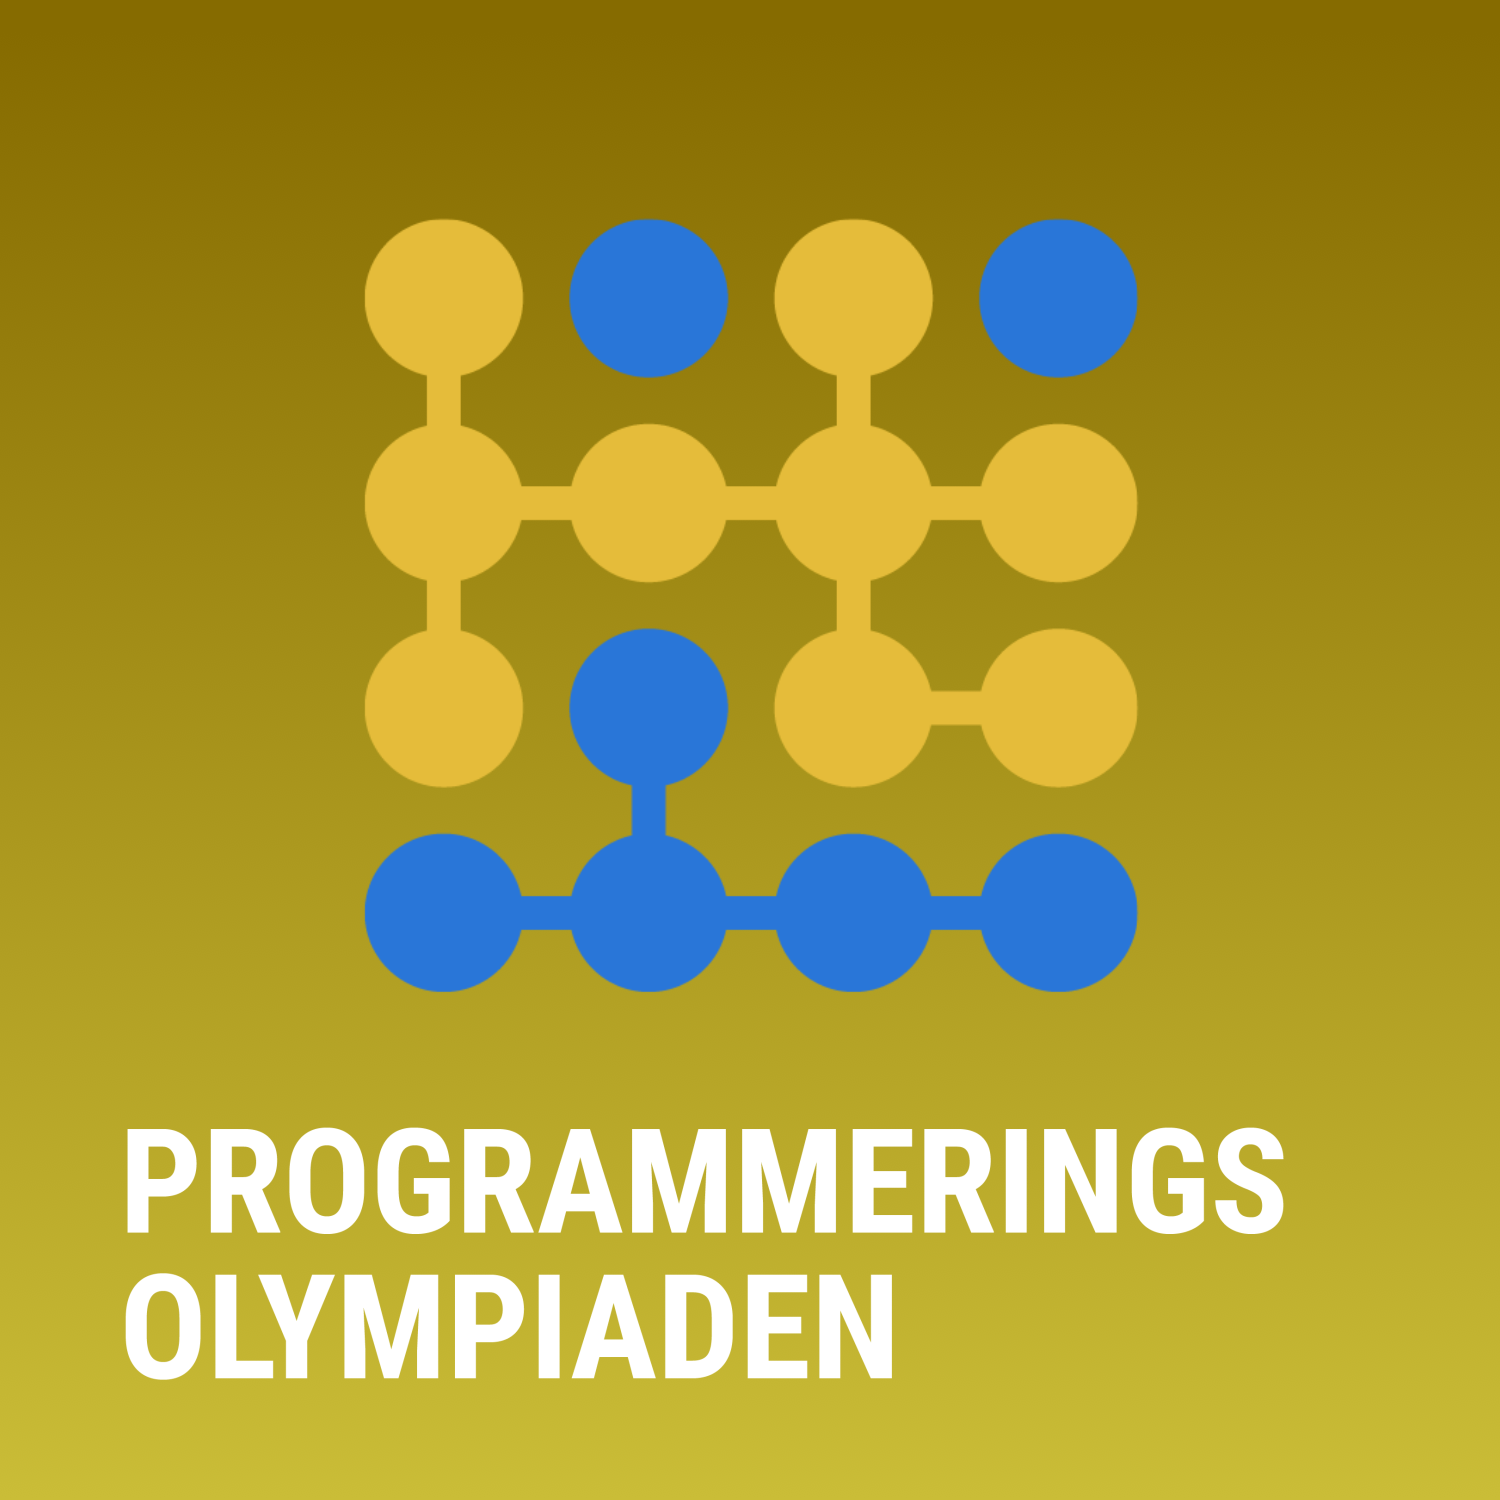 Programmeringsolympiaden